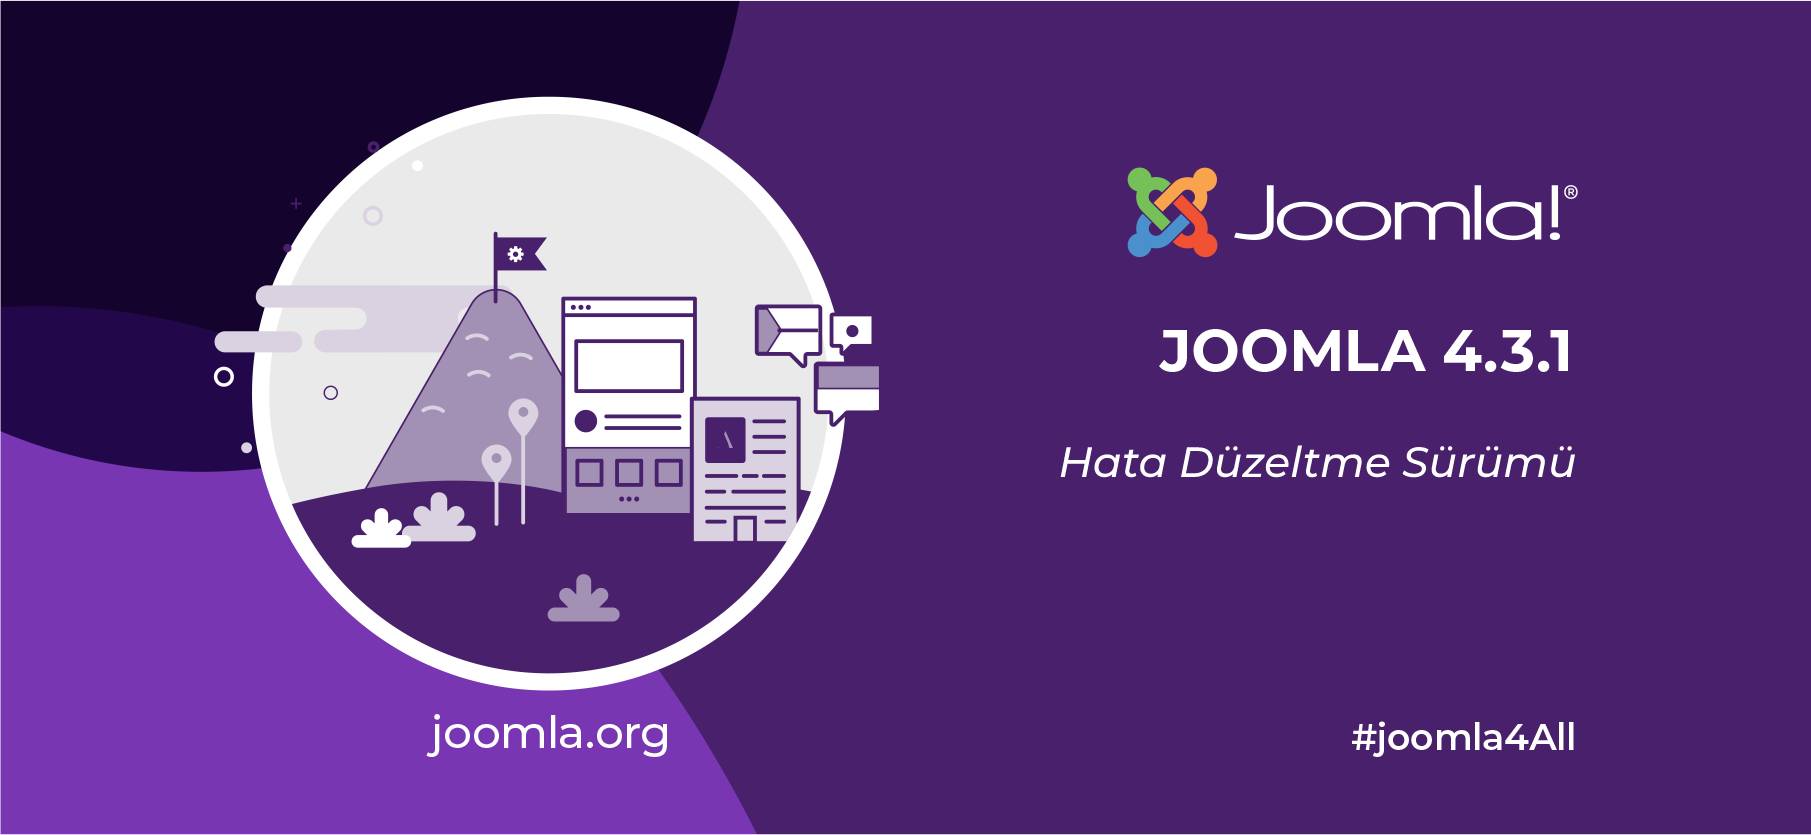 Joomla 4.3.1